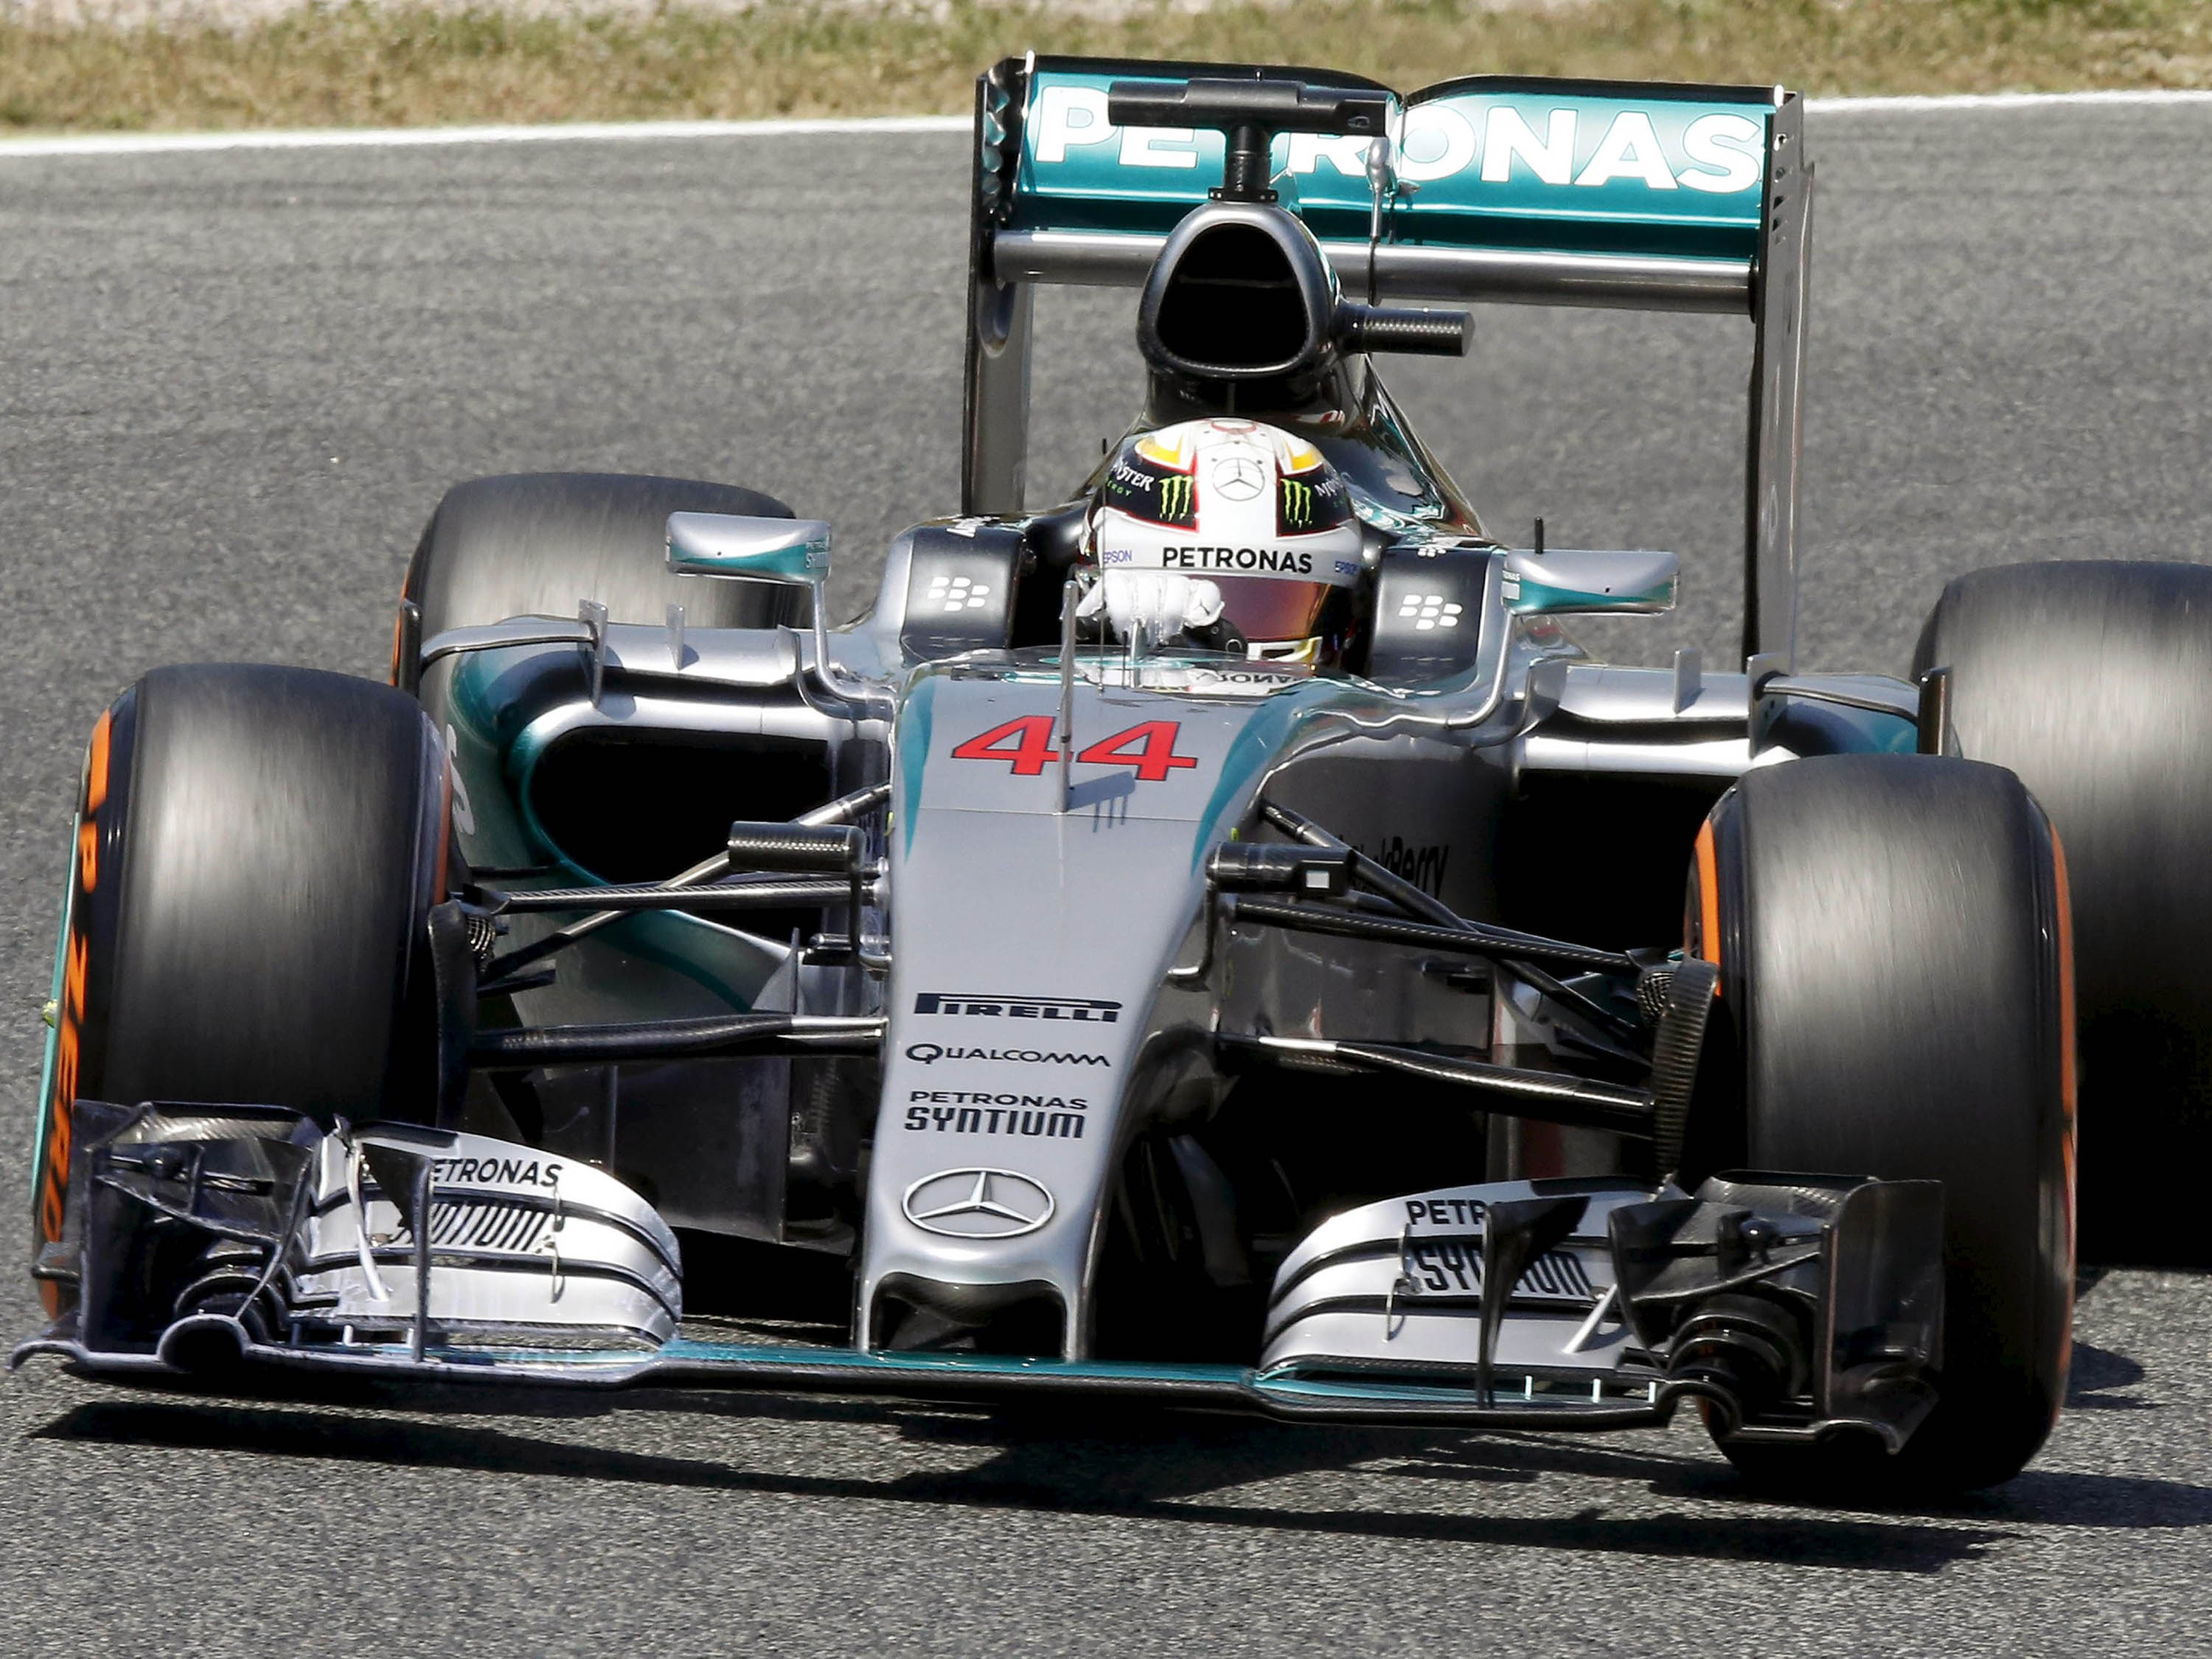 GP do Bahrein: Max lidera primeiro treino da F1 em 2021; Hamilton é 4º, fórmula 1